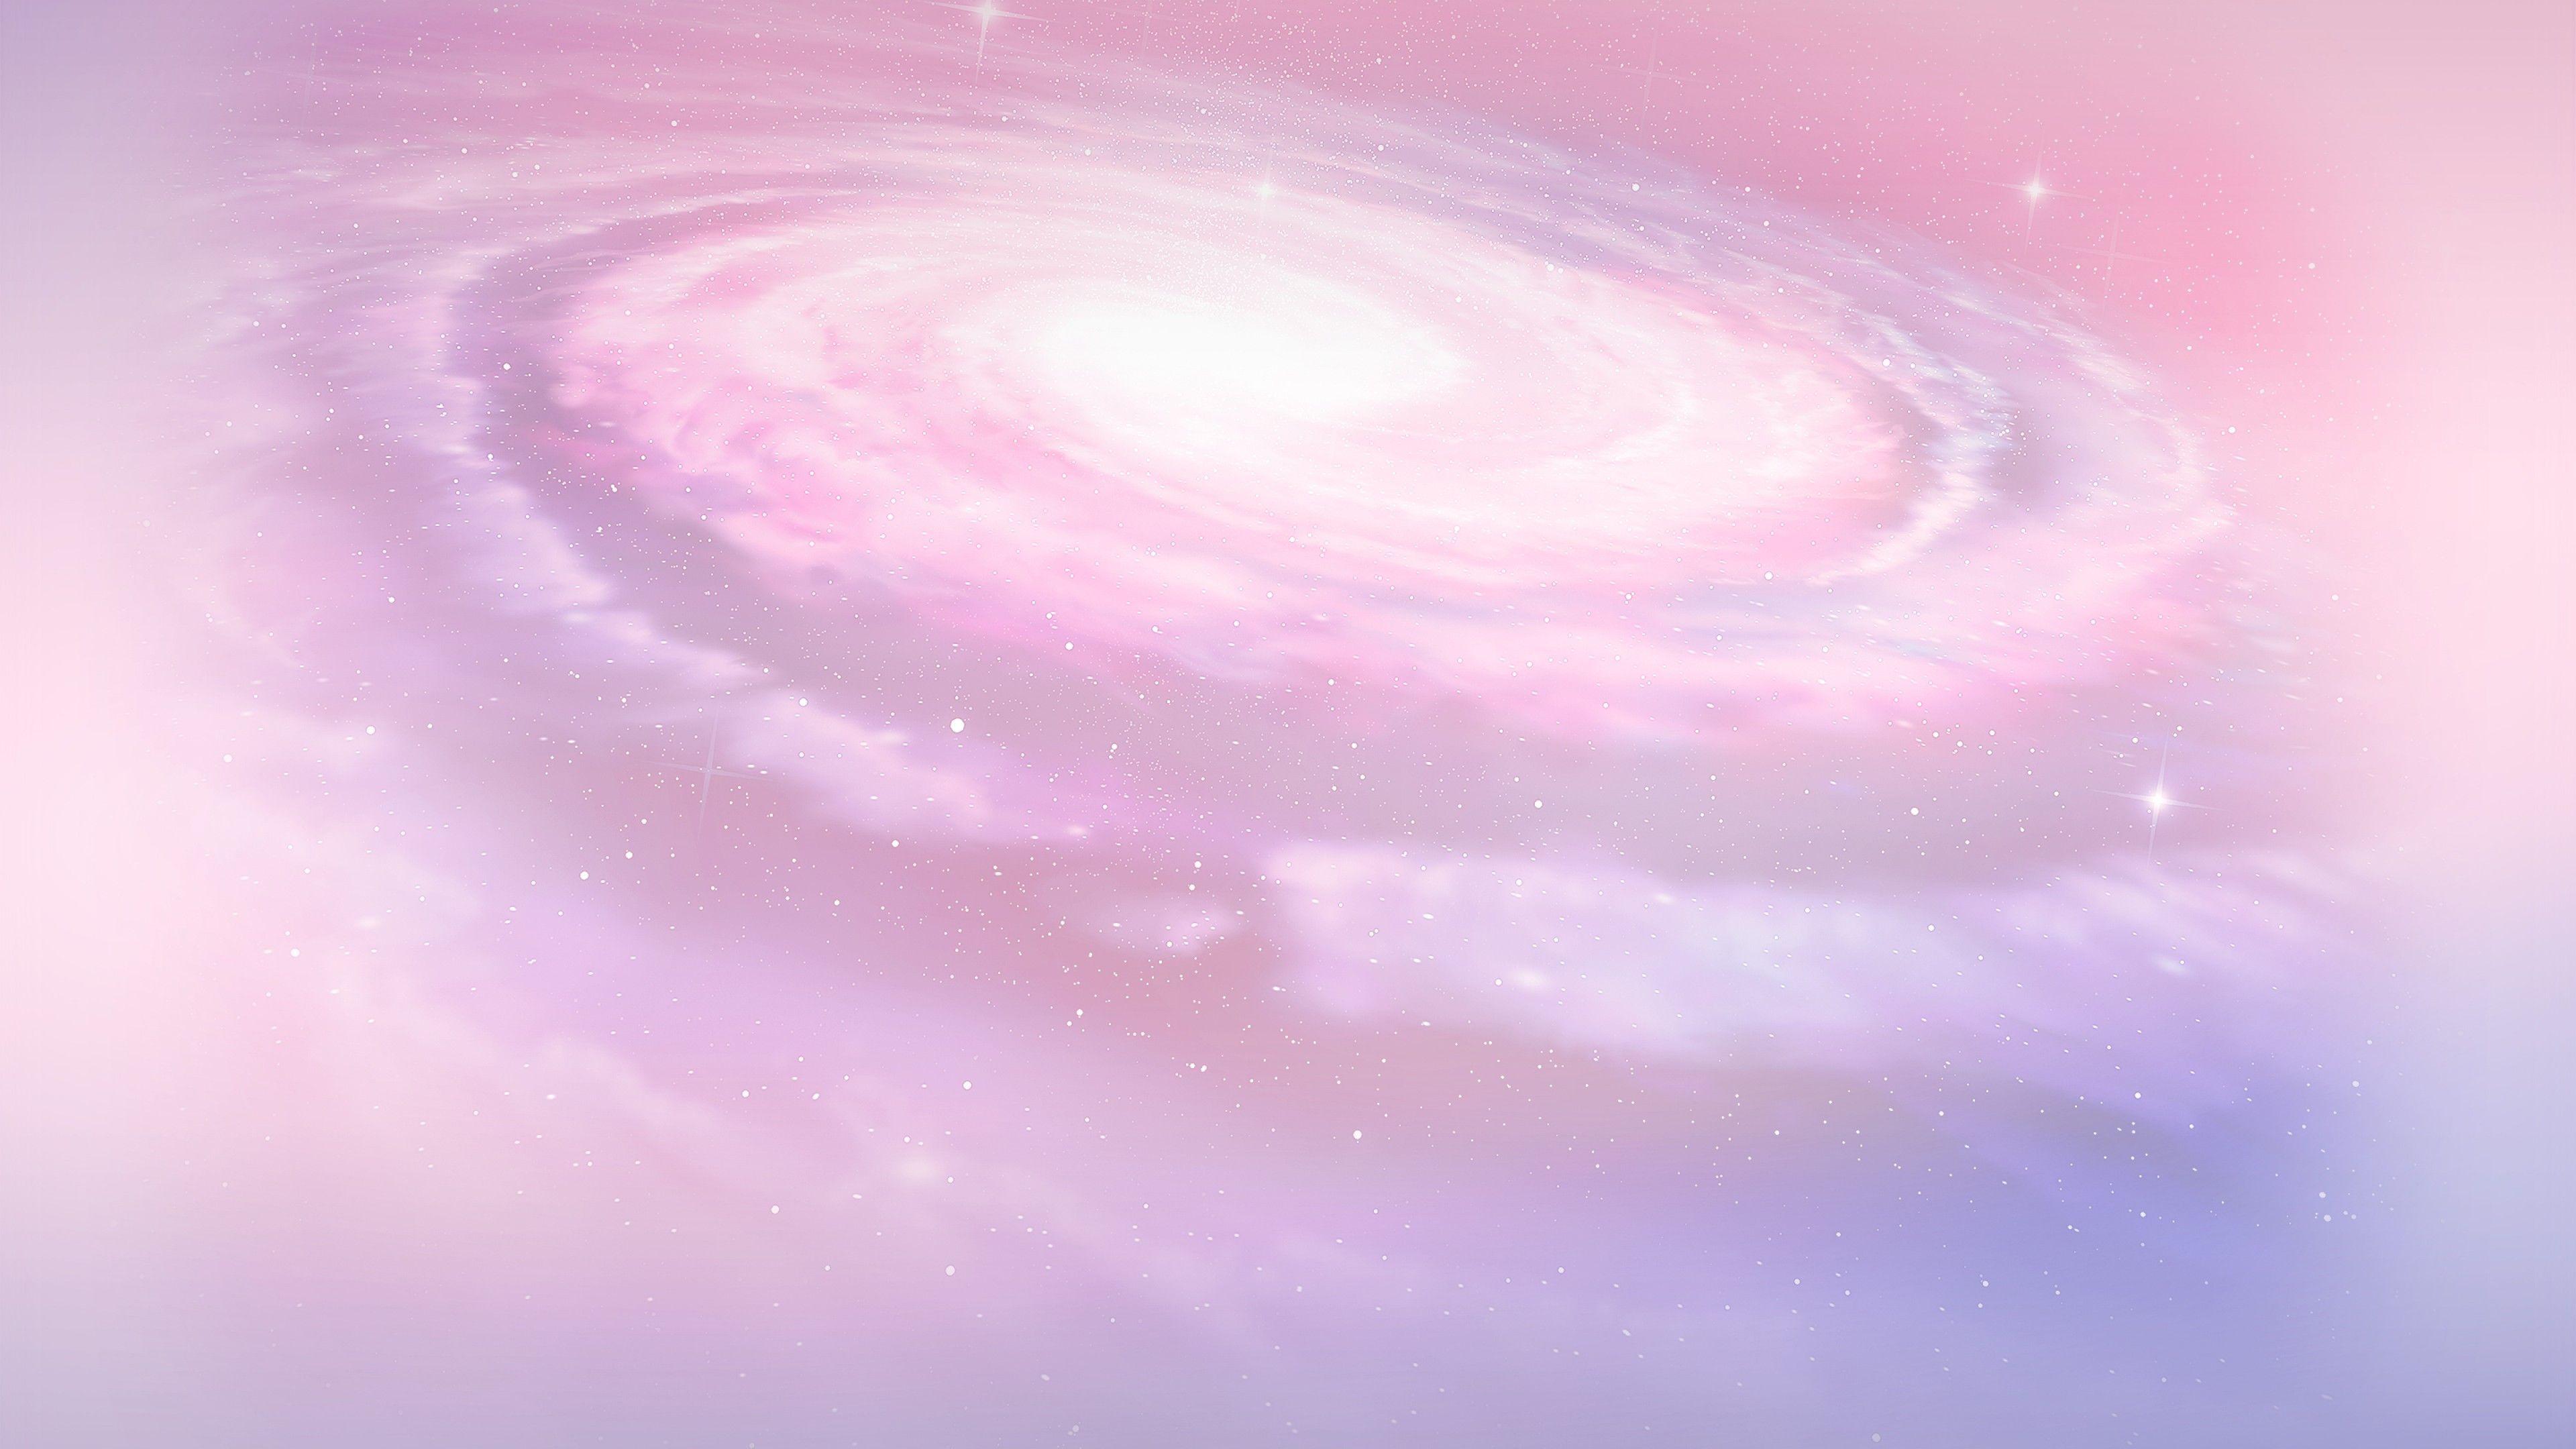 Tận hưởng cảm giác thư giãn và yên tĩnh với hình nền Pastel Pink Galaxy đẹp. Với màu hồng nhạt chủ đạo, thiết kế này sẽ giúp cho bạn thư thái sau một ngày dài căng thẳng. Khám phá ngay hình nền này và tìm kiếm sự cân bằng trong cuộc sống của bạn.